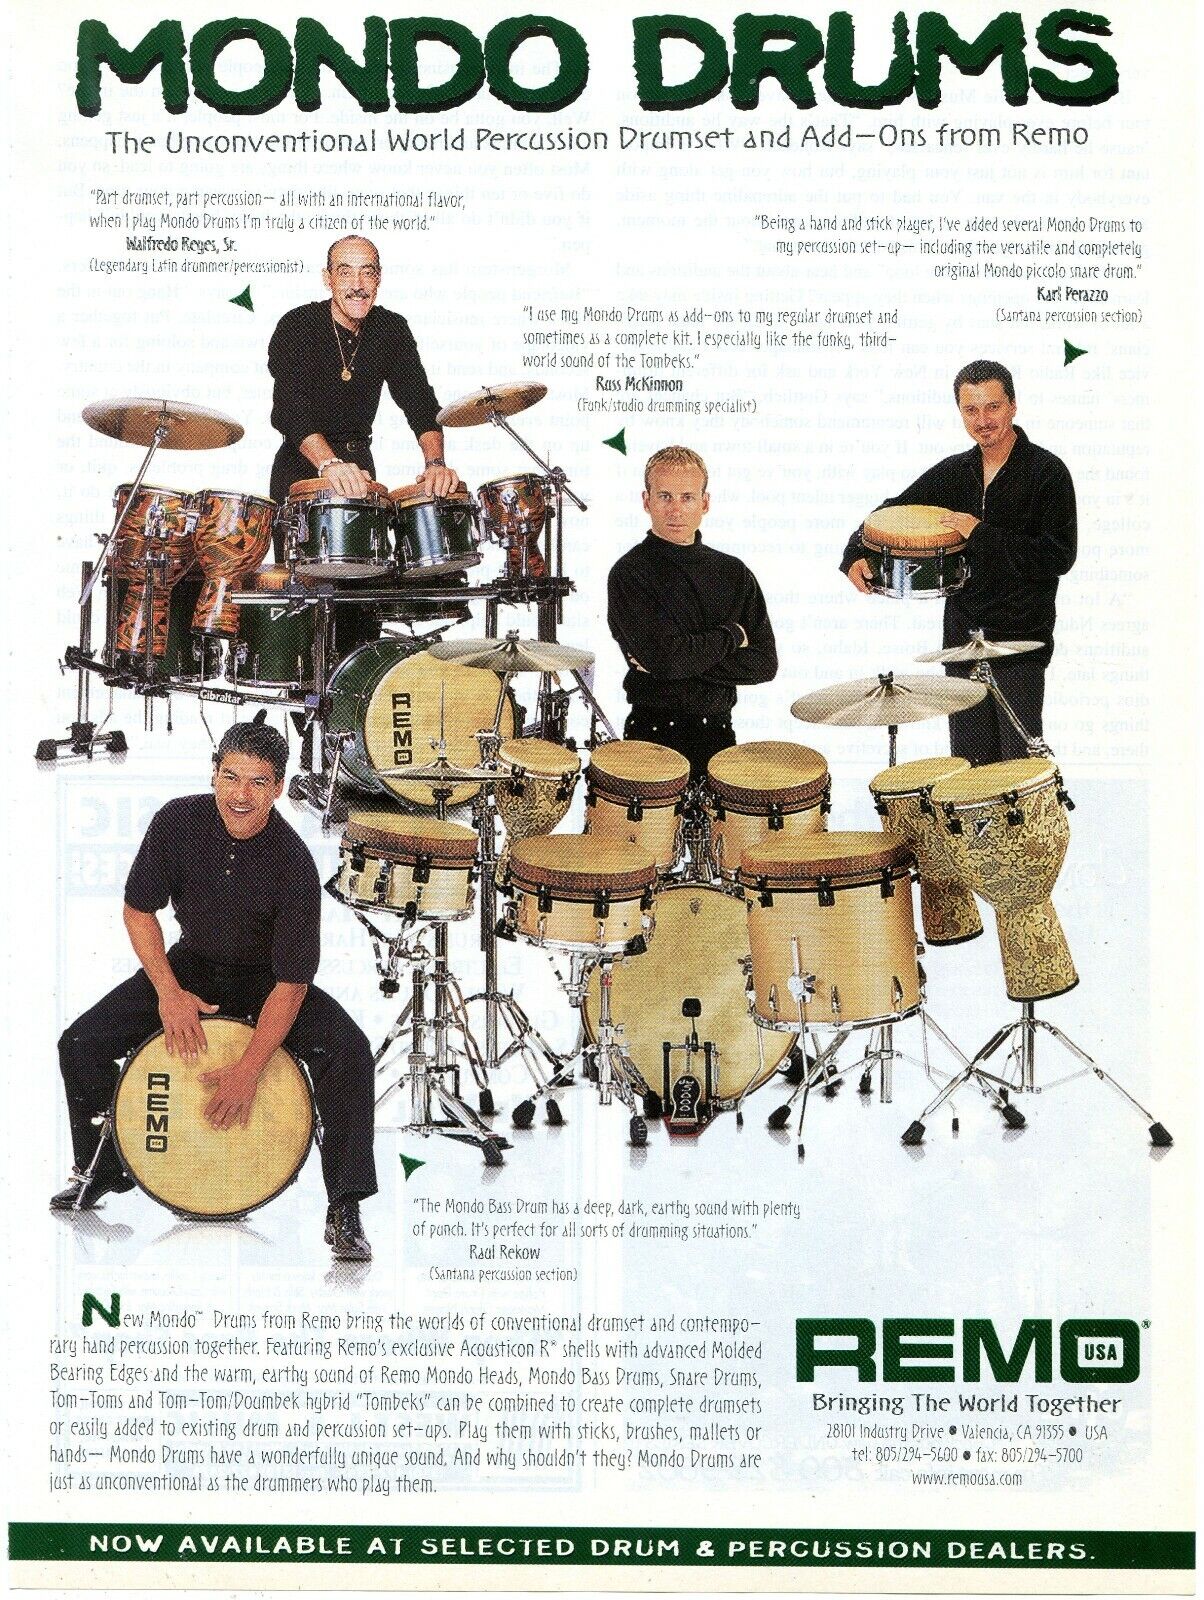 1997 Print Ad of Remo Mondo Drums w Russ McKinnon, Karl Perazzo, Raul Rekow